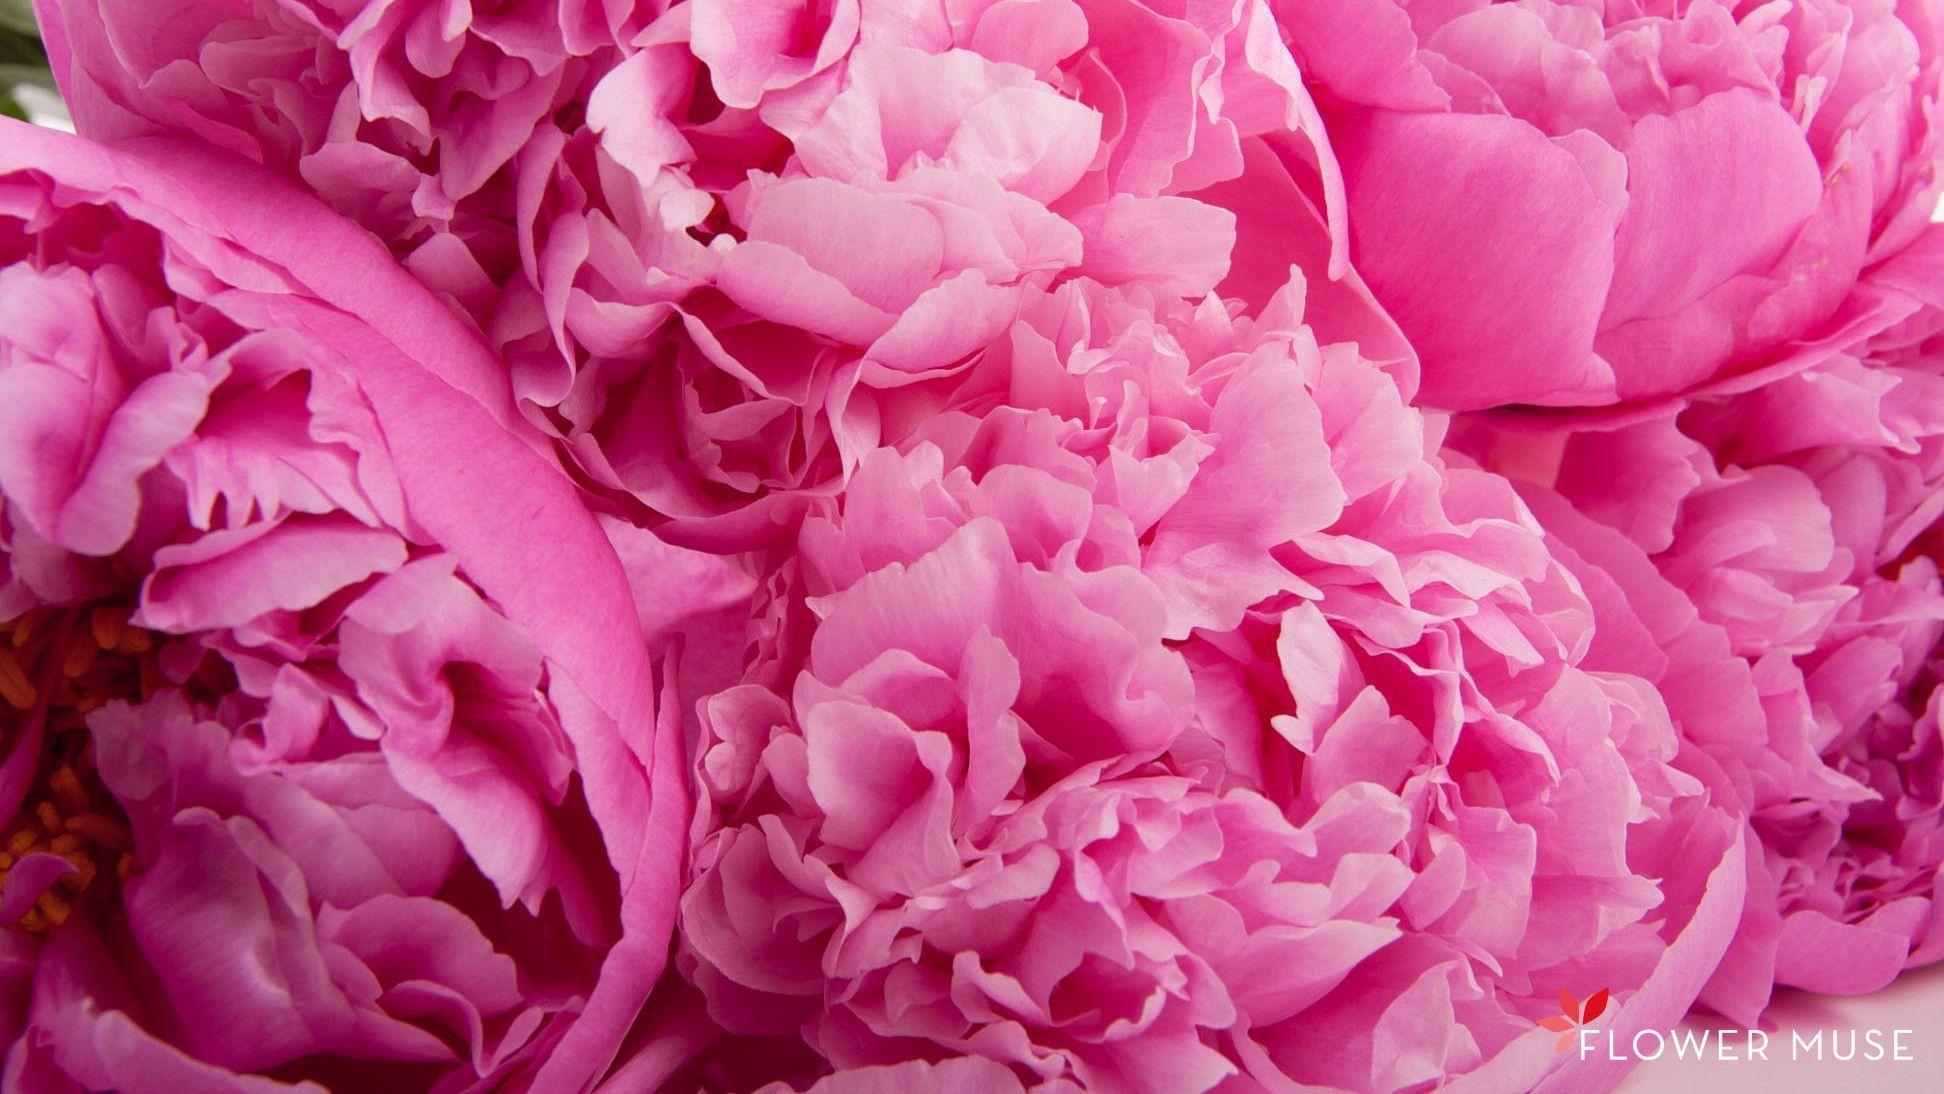 Pink Peonies Flower Wallpapers - Top Free Pink Peonies Flower